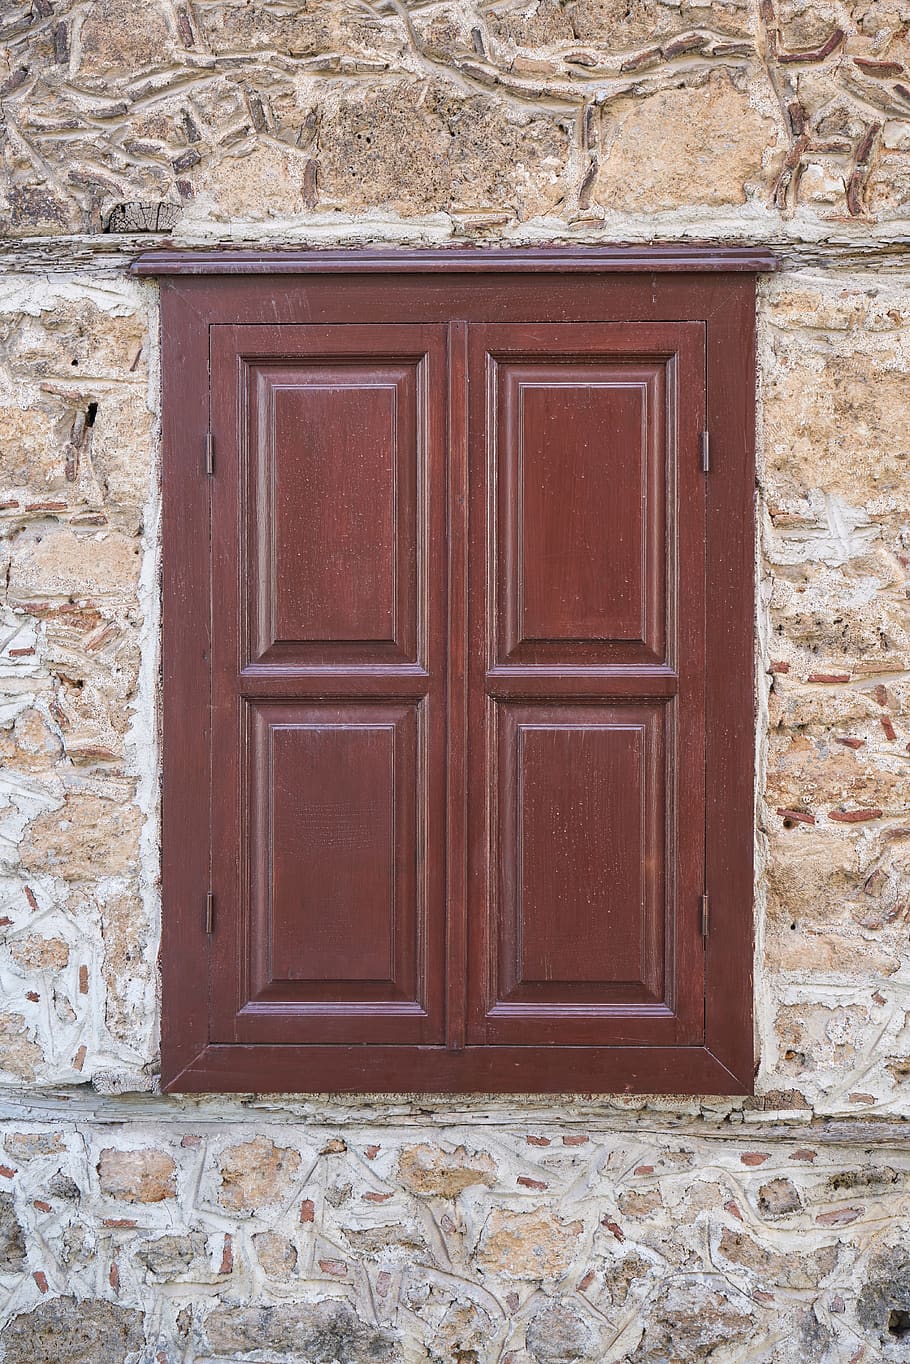 pintu, bangunan, tua, jendela, kayu, papan serat kayu, coklat, batu, dinding, budaya